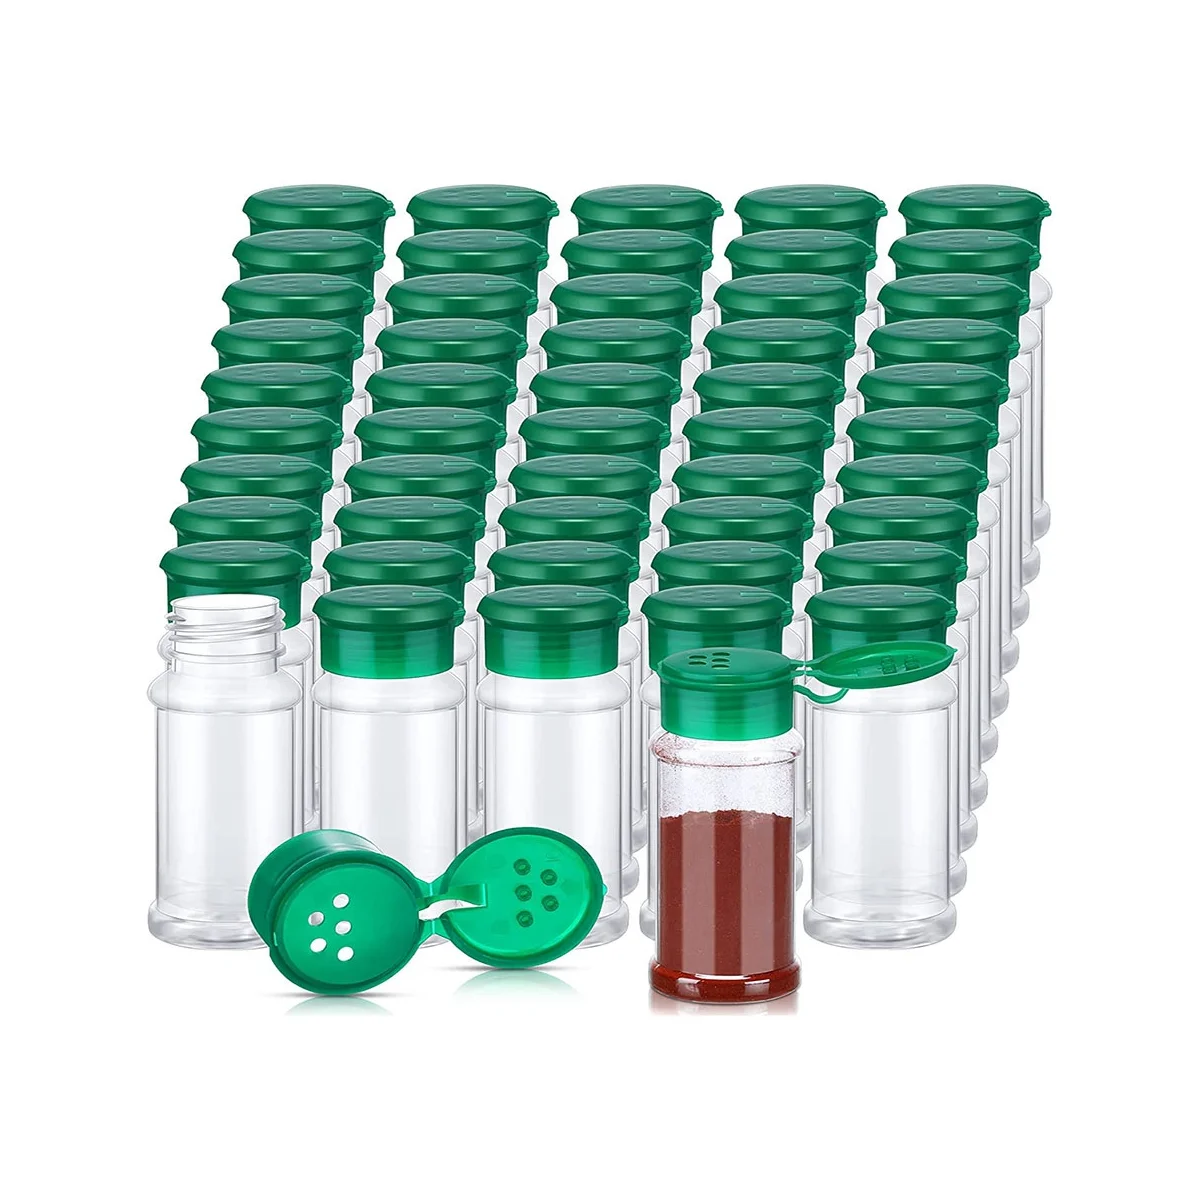 50шт Пластиковые банки для специй с крышками-шейкерами Контейнеры для специй Пластиковые бутылки для специй Банки-шейкеры для приправ 3,3 унции / 100 мл Зеленый